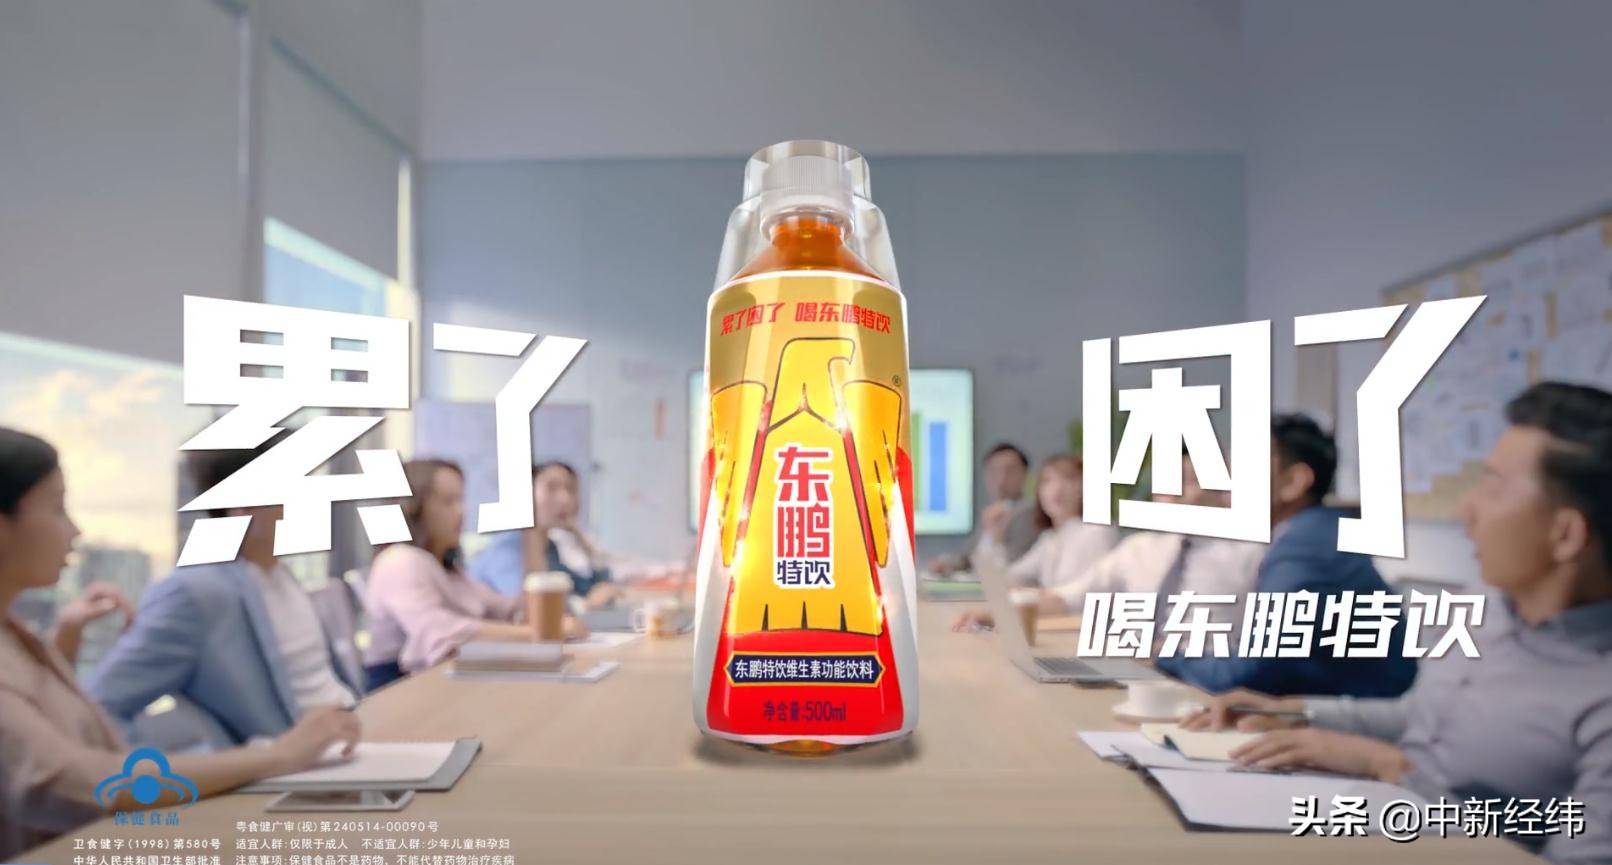 东鹏特饮视频广告截图 来源:东鹏饮料官网 一款产品打天下?